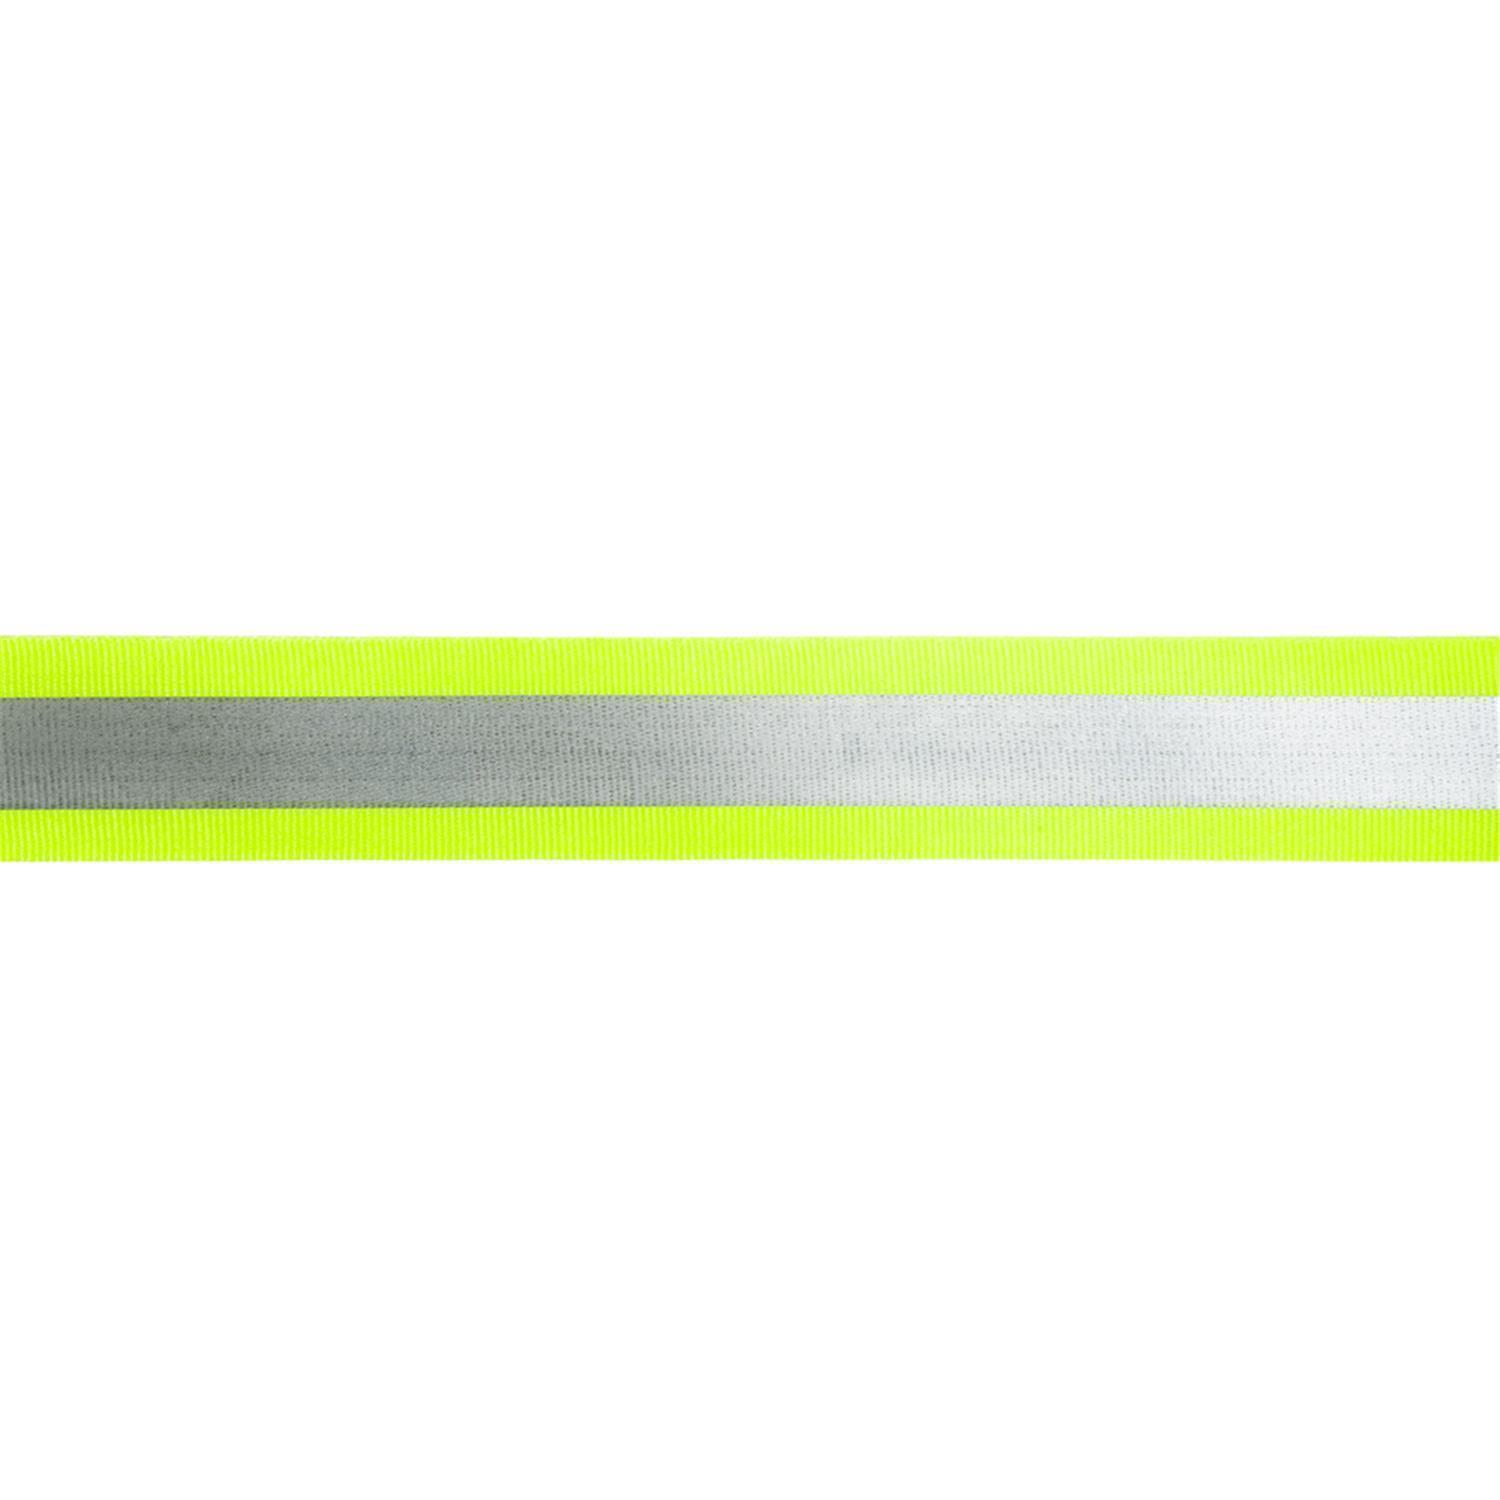 Reflektorband 40mm breit in 2 Farben gelb-silber 05 Meter